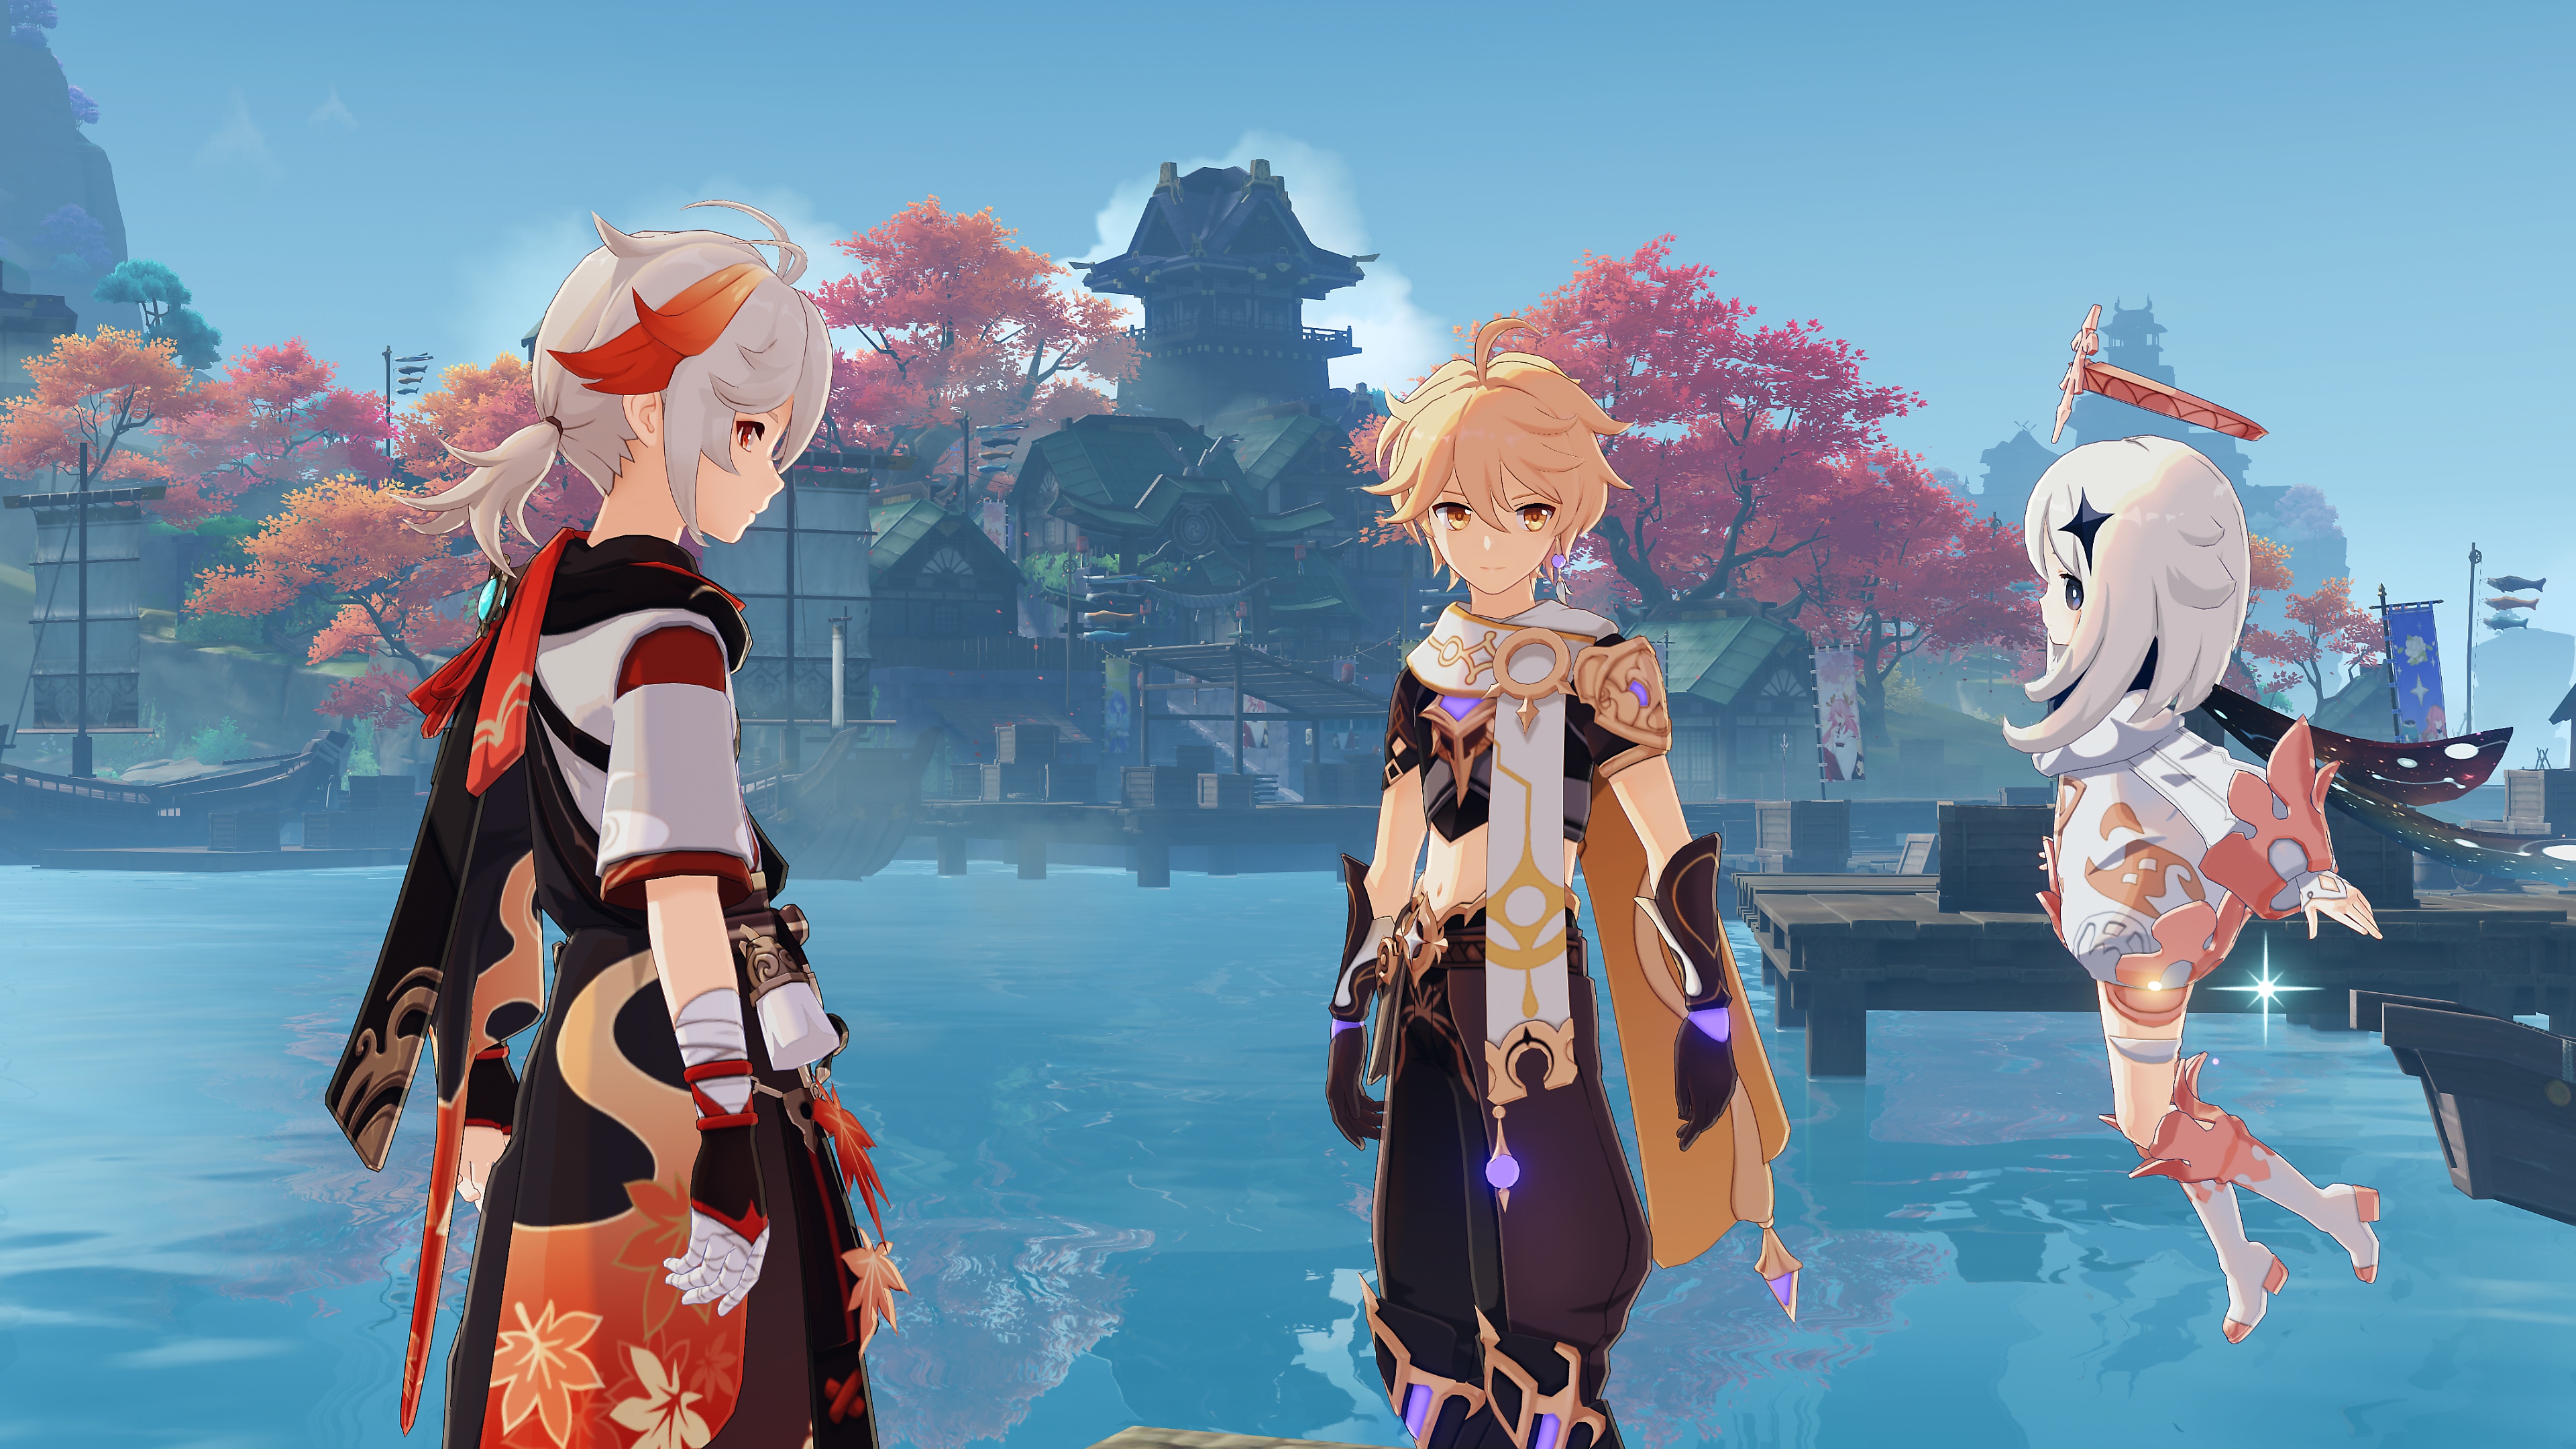 Genshin Impact: 2.6 Güncellemesi ekran görüntüsünde, sohbet eden üç karakter yer alıyor